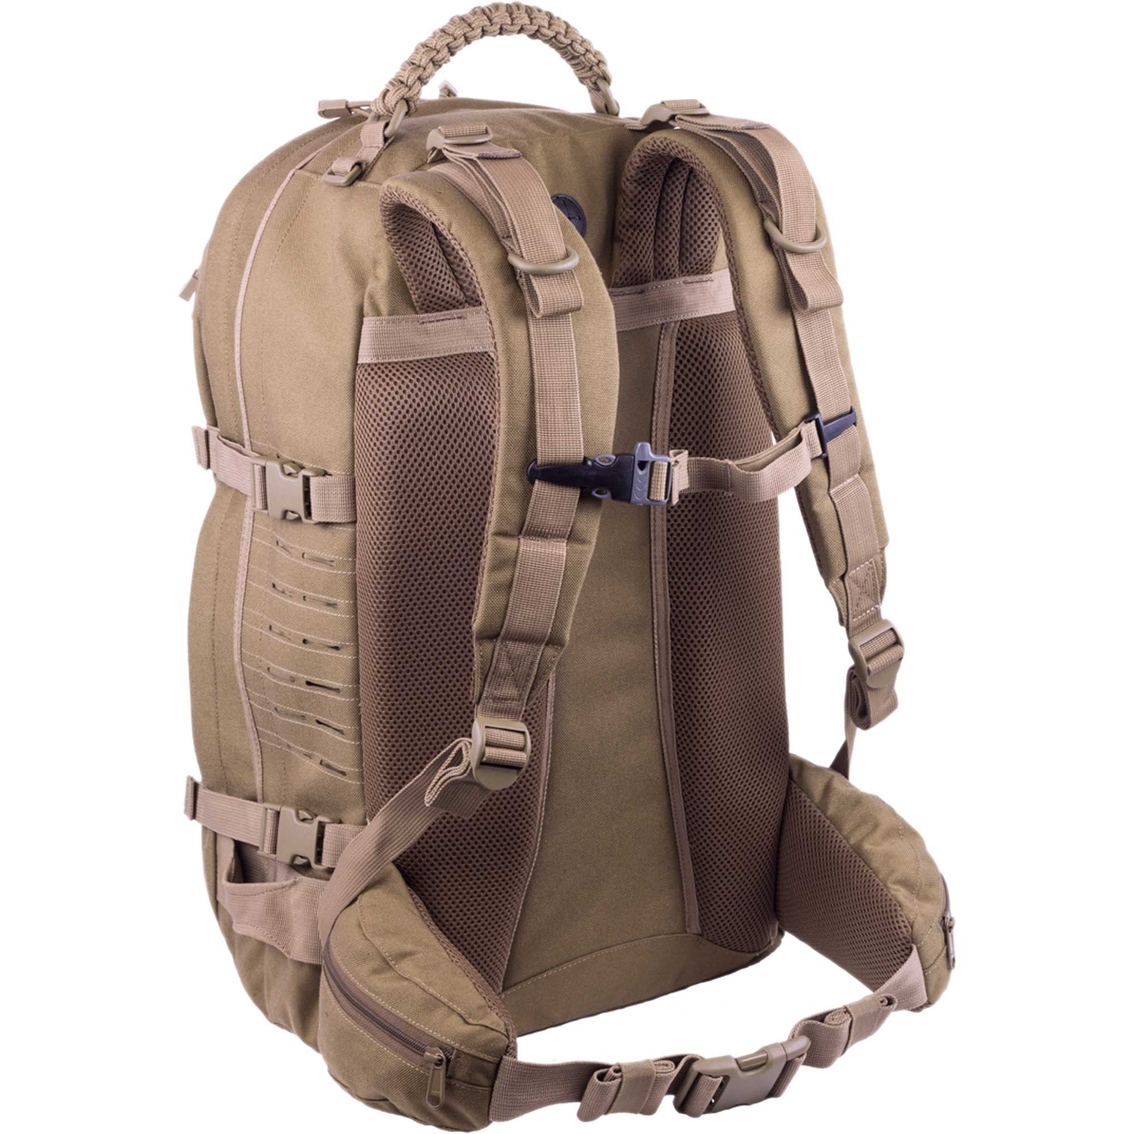 Elite Survival Mission Backpack - Image 2 of 6